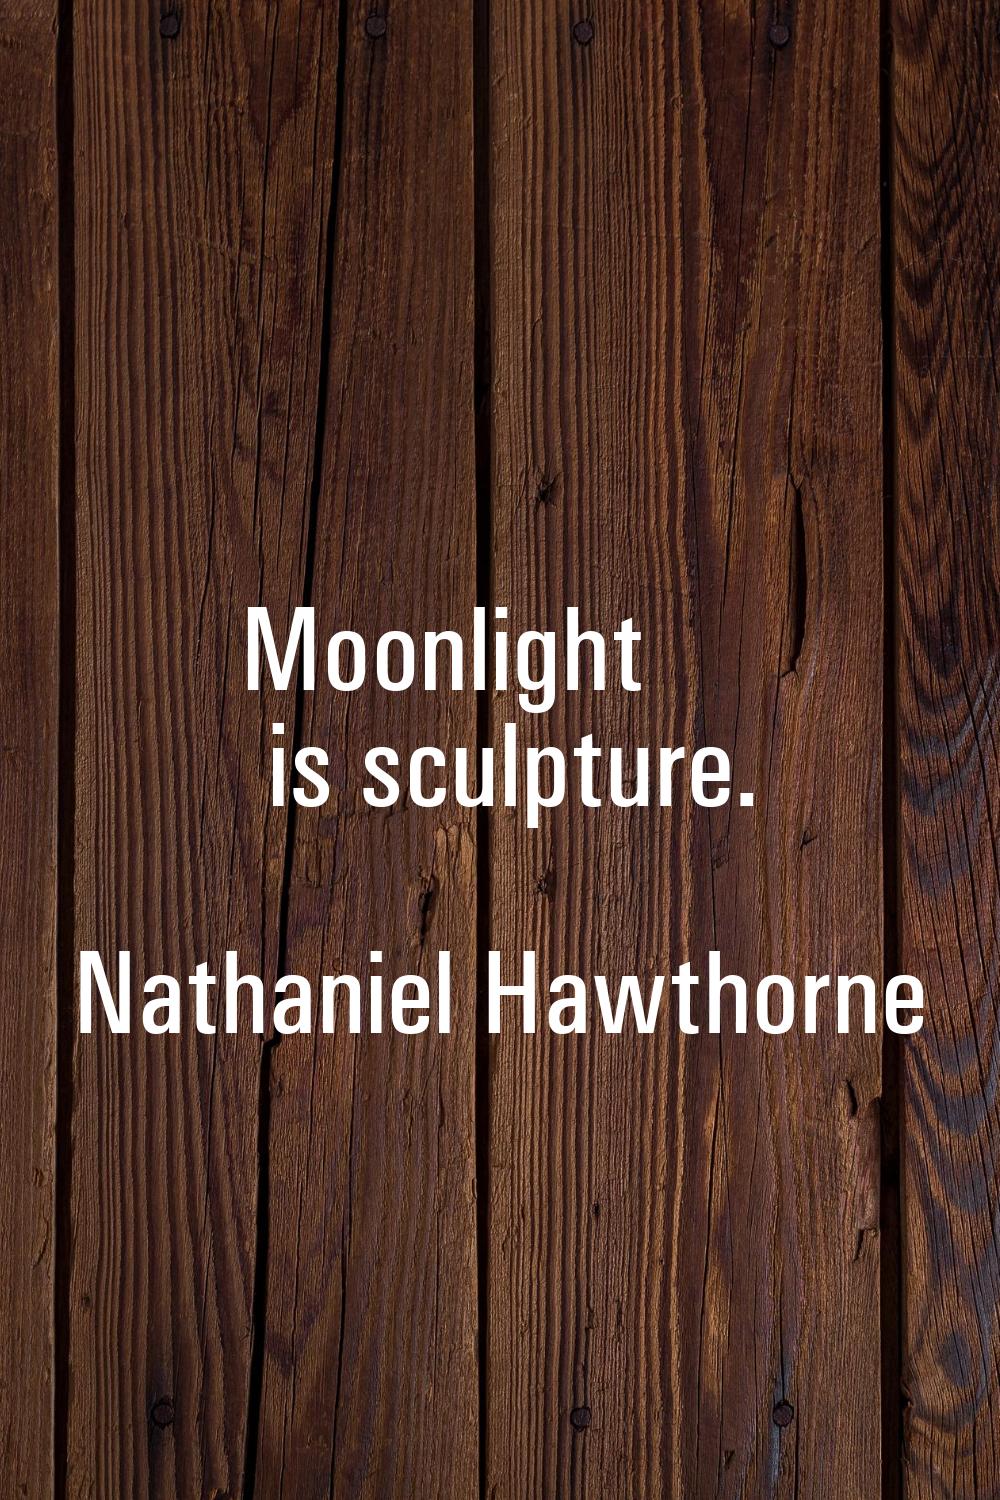 Moonlight is sculpture.